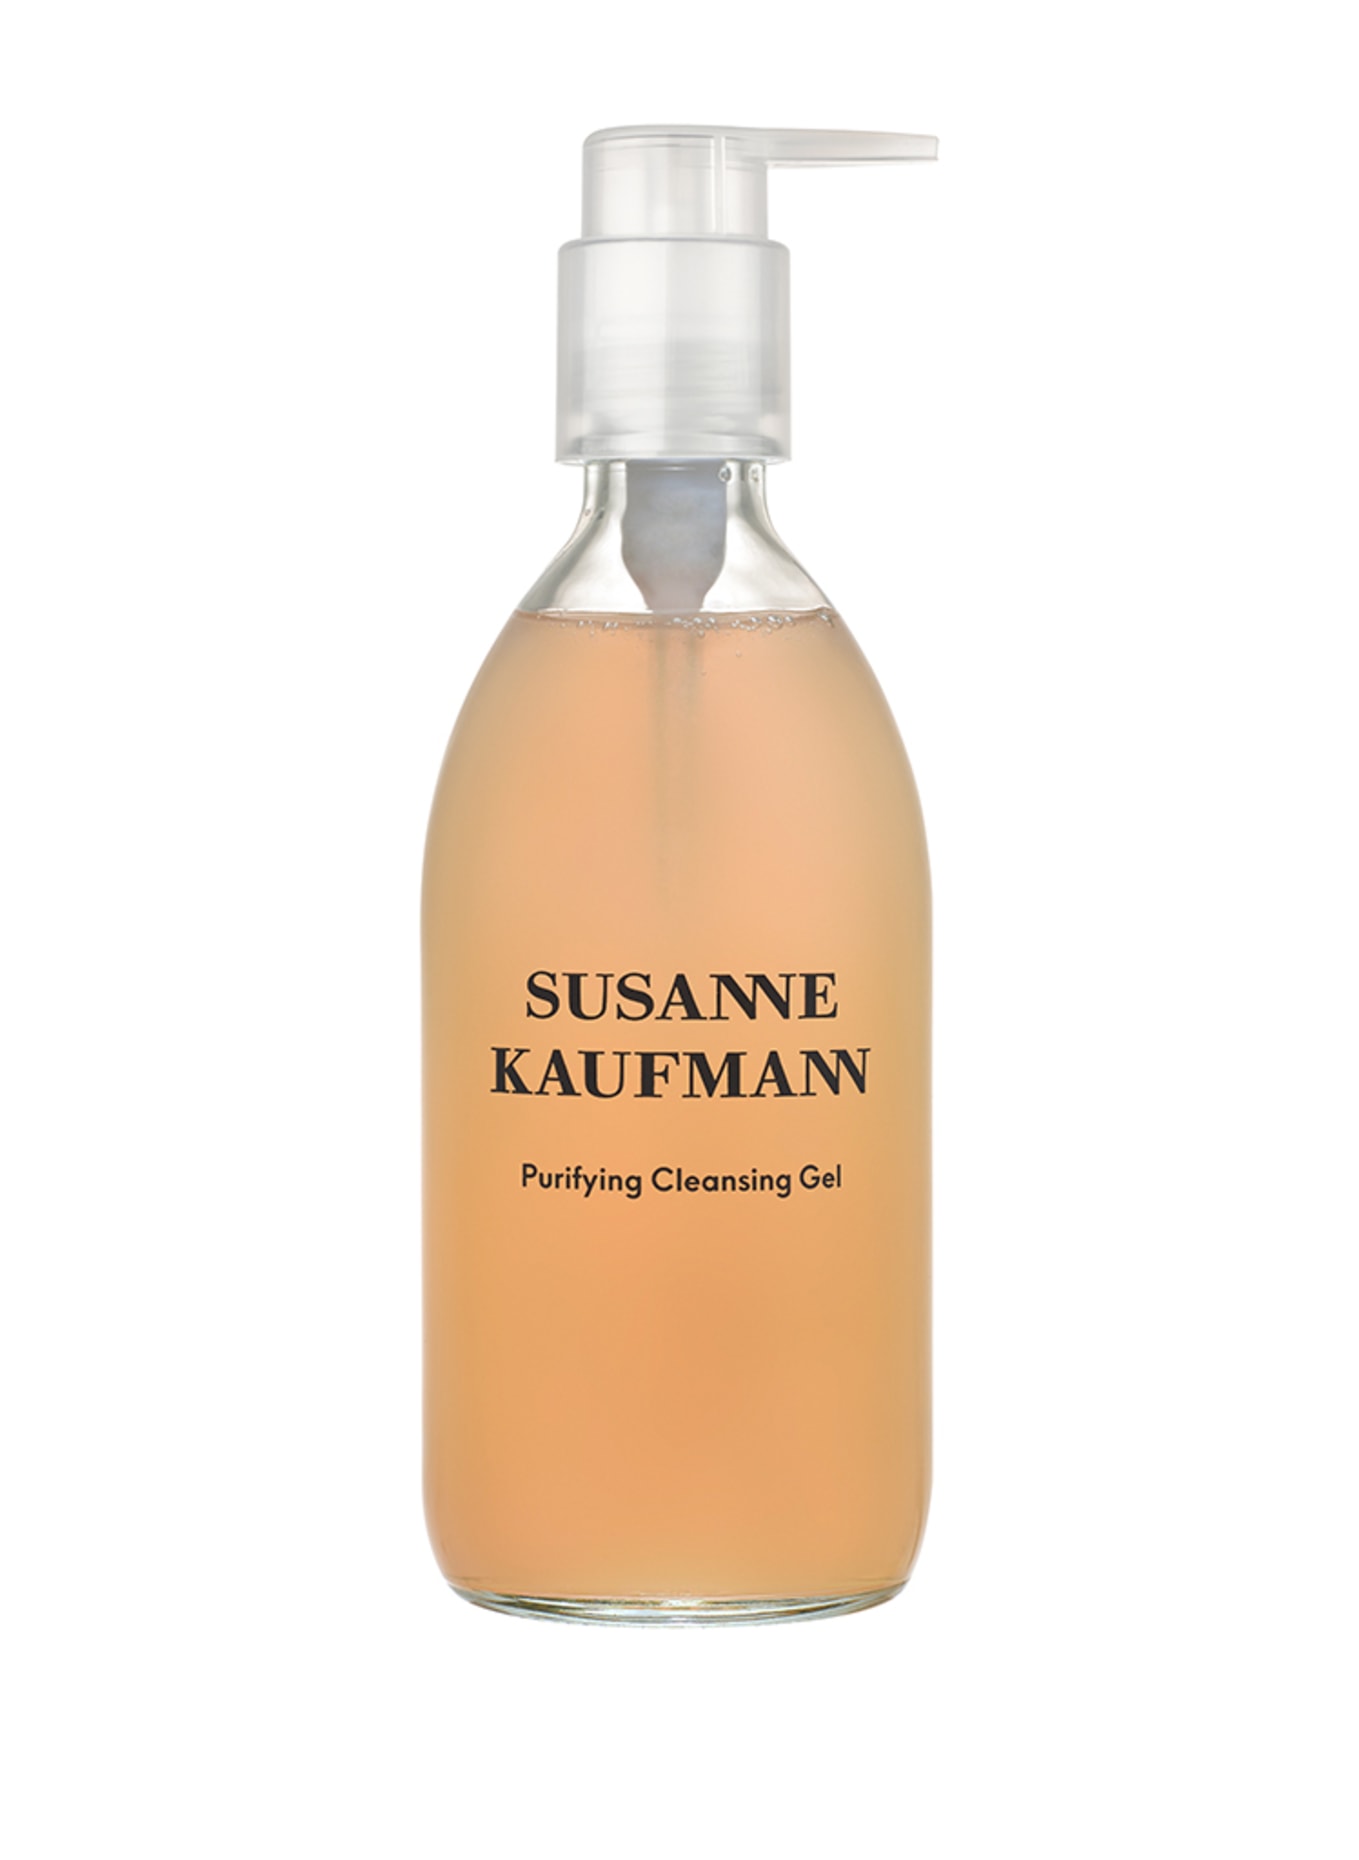 SUSANNE KAUFMANN PURIFYING CLEANSING GEL (Obrazek 1)